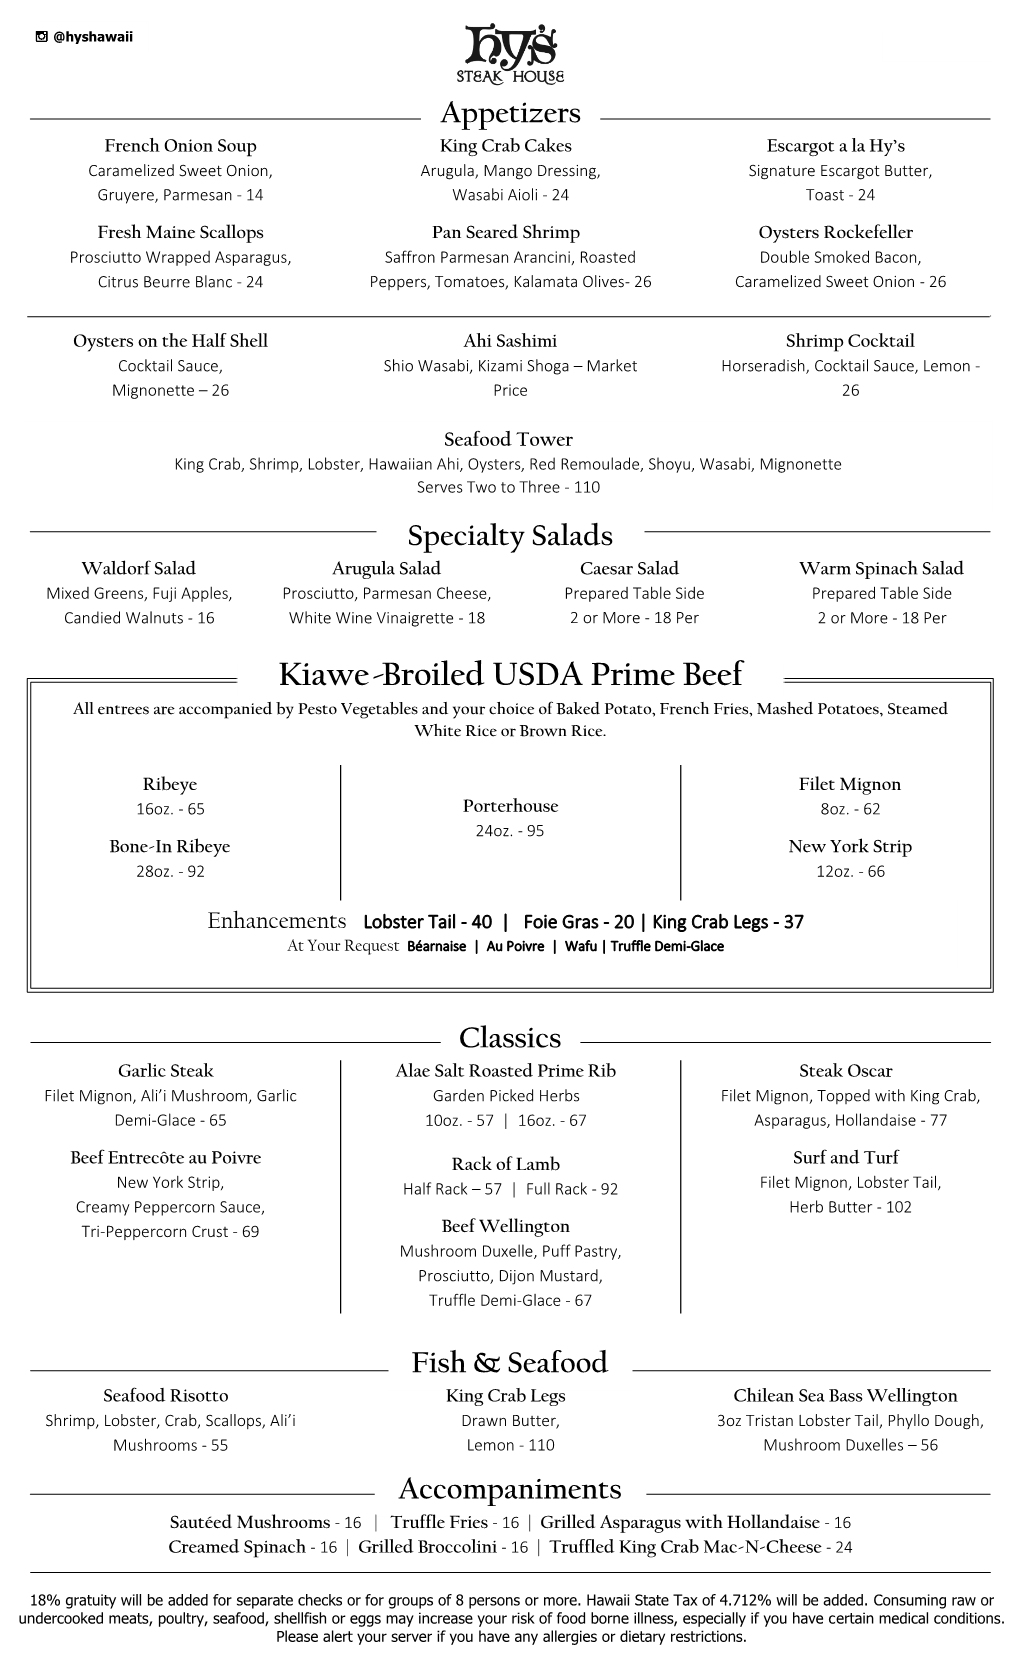 Kiawe-Broiled USDA Prime Beef